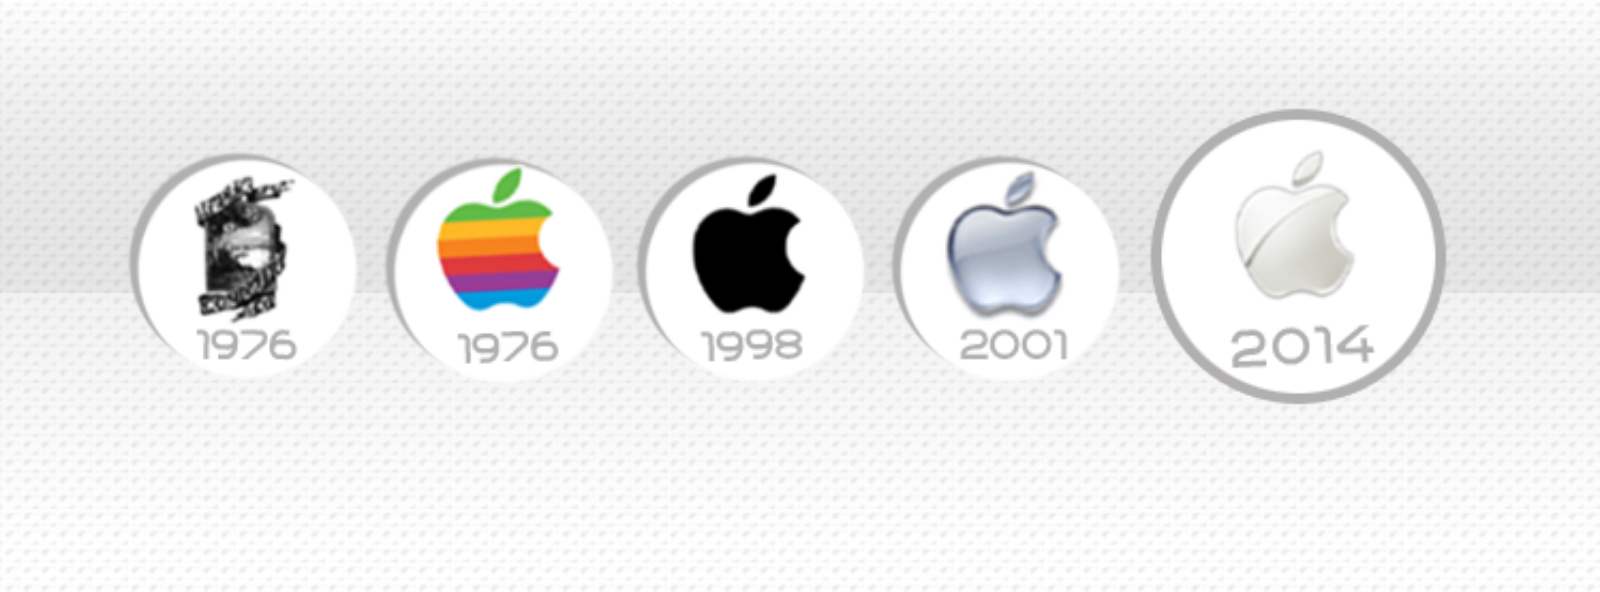 ShopDunk - Tại sao logo hãng Apple là trái táo dở?